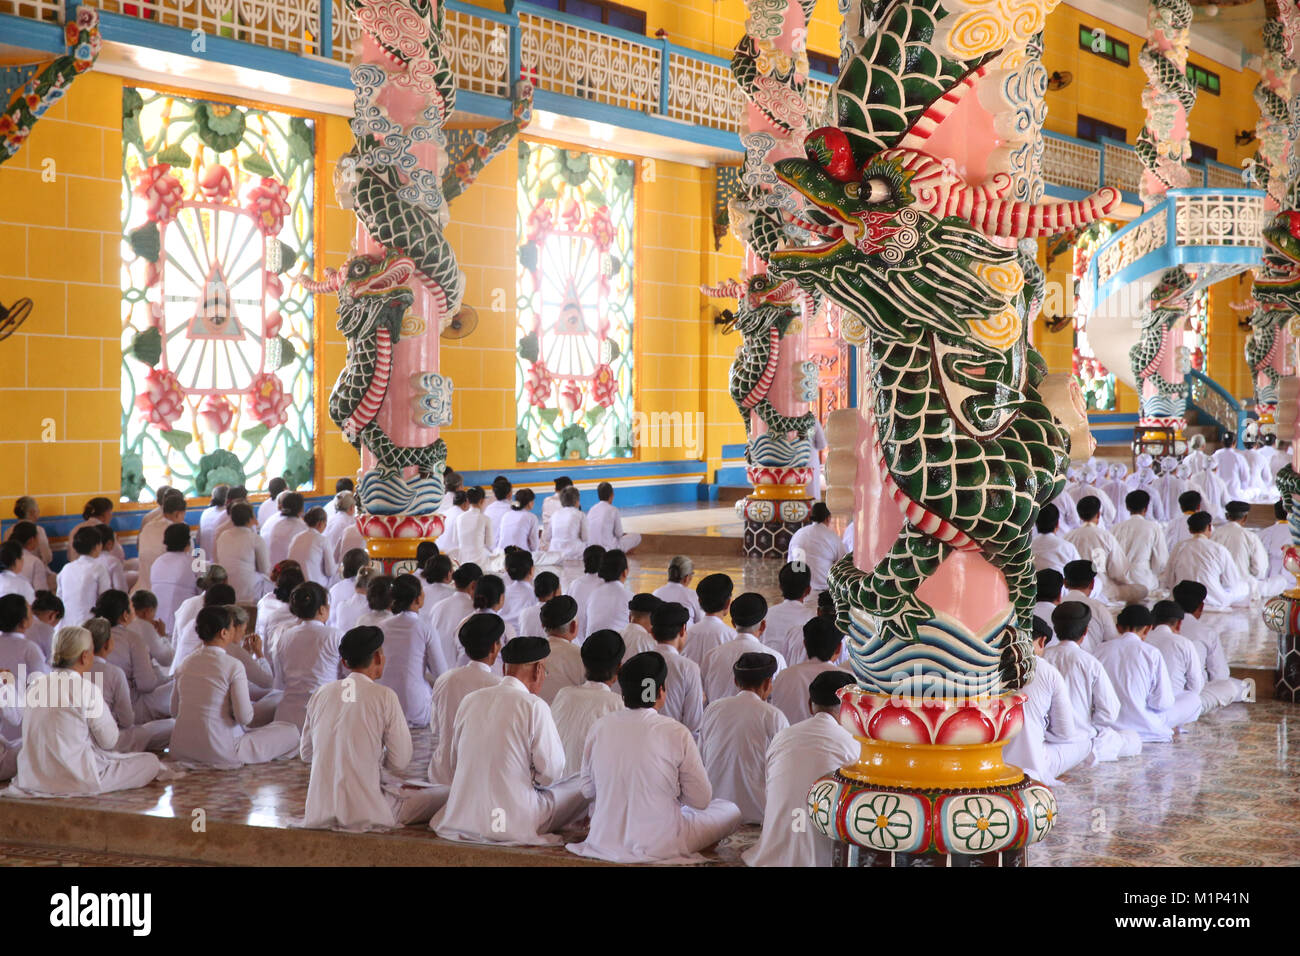 Pregando pii uomini e donne, cerimoniale di preghiera di mezzogiorno, Cao Dai Santa Sede Tempio Tay Ninh, Vietnam, Indocina, Asia sud-orientale, Asia Foto Stock